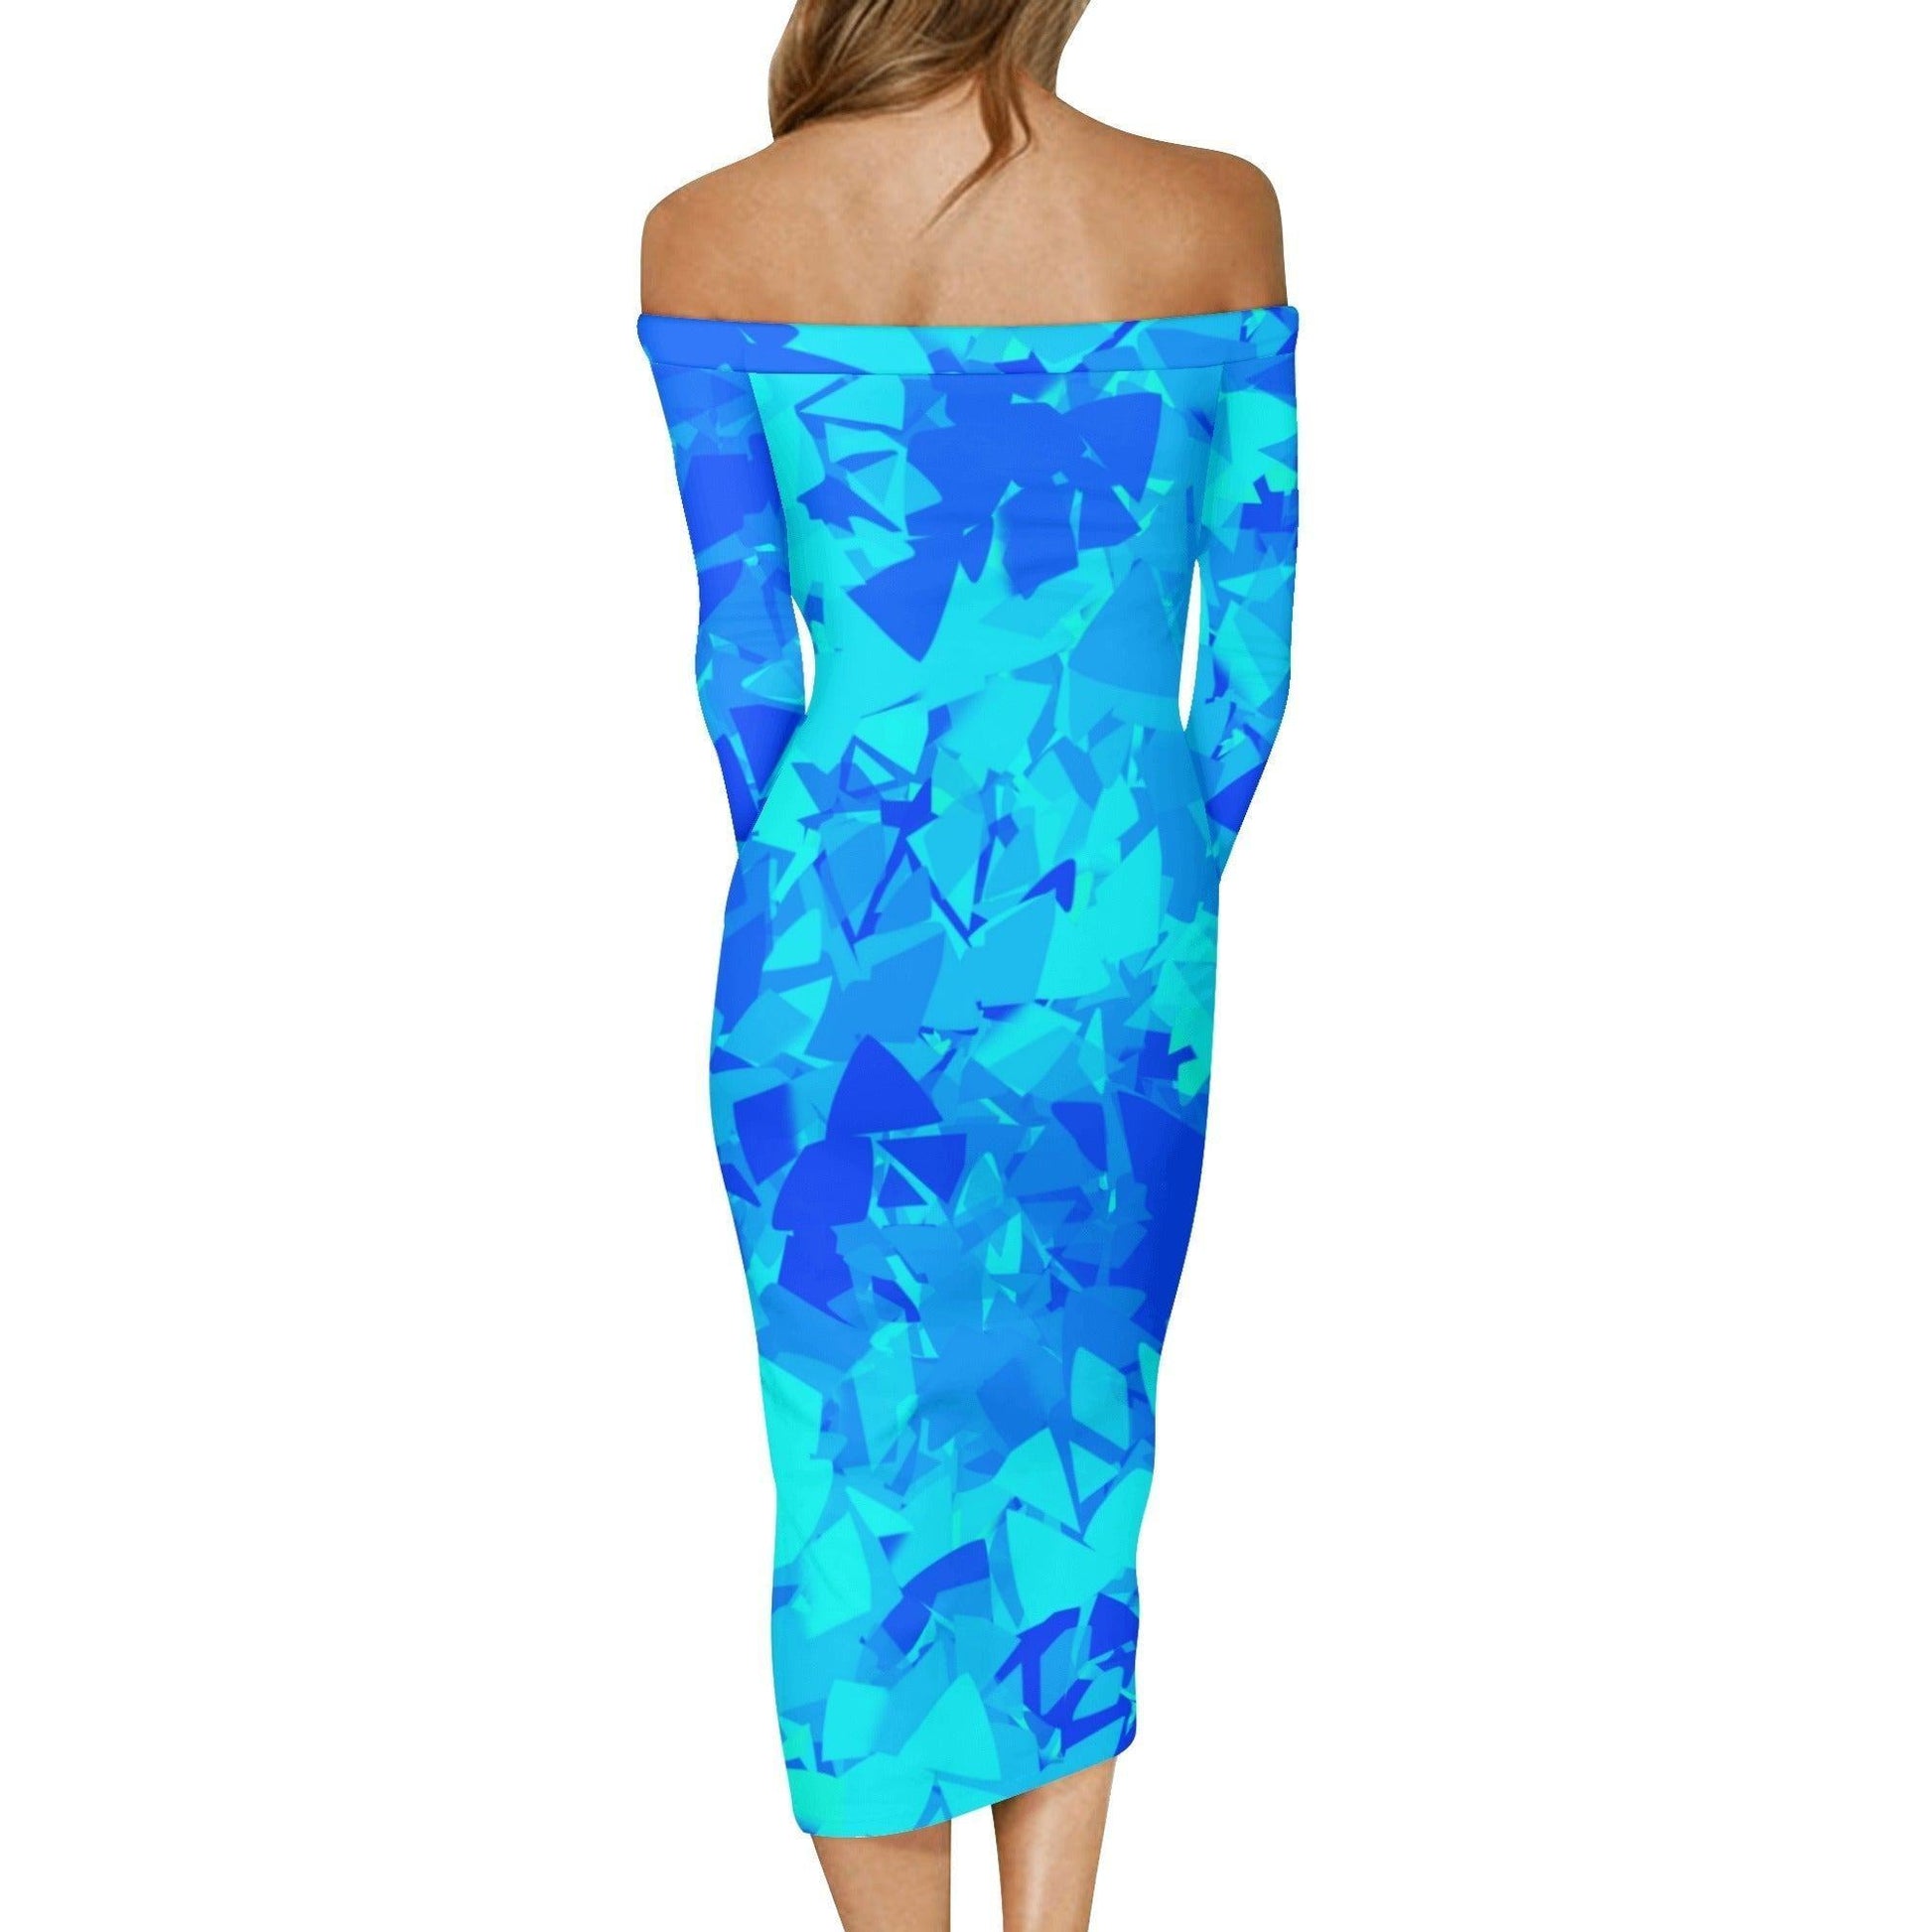 Blue Crystal Long Sleeve Off-Shoulder-Kleid -- Blue Crystal Long Sleeve Off-Shoulder-Kleid - undefined Off-Shoulder-Kleid | JLR Design